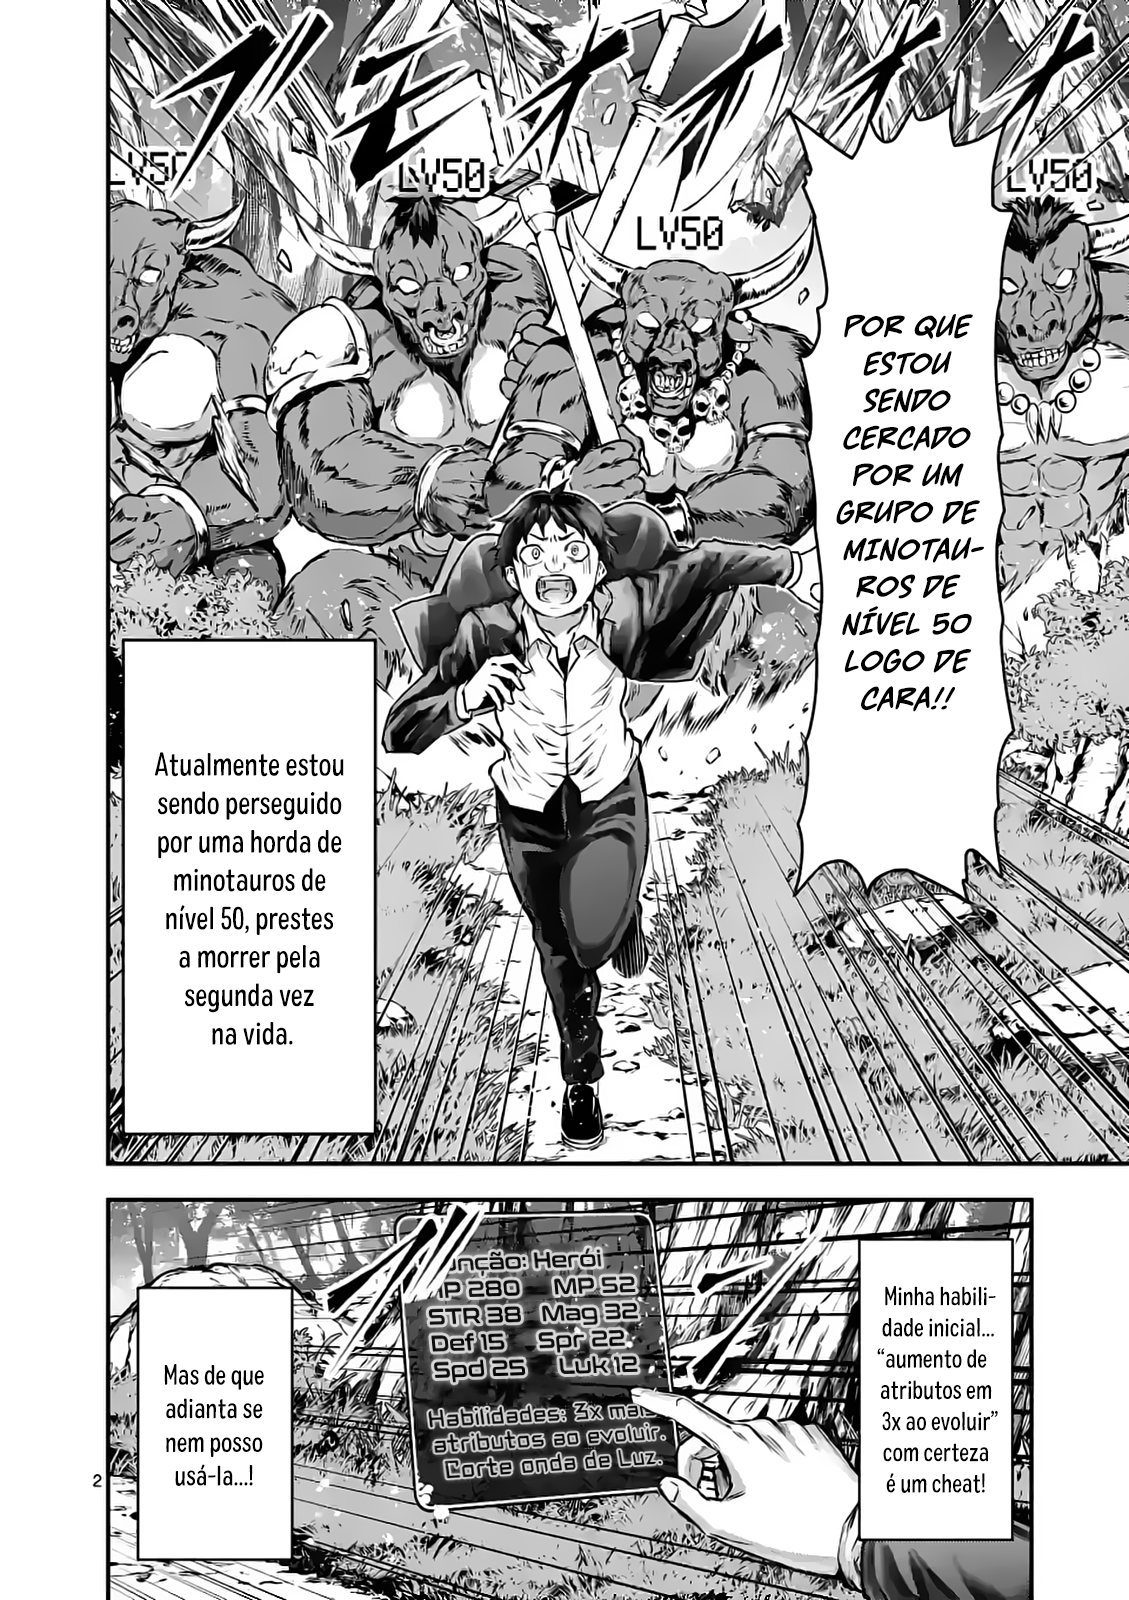 Manga yuusha ga shinda! - kami no kuni-hen chapter 6 